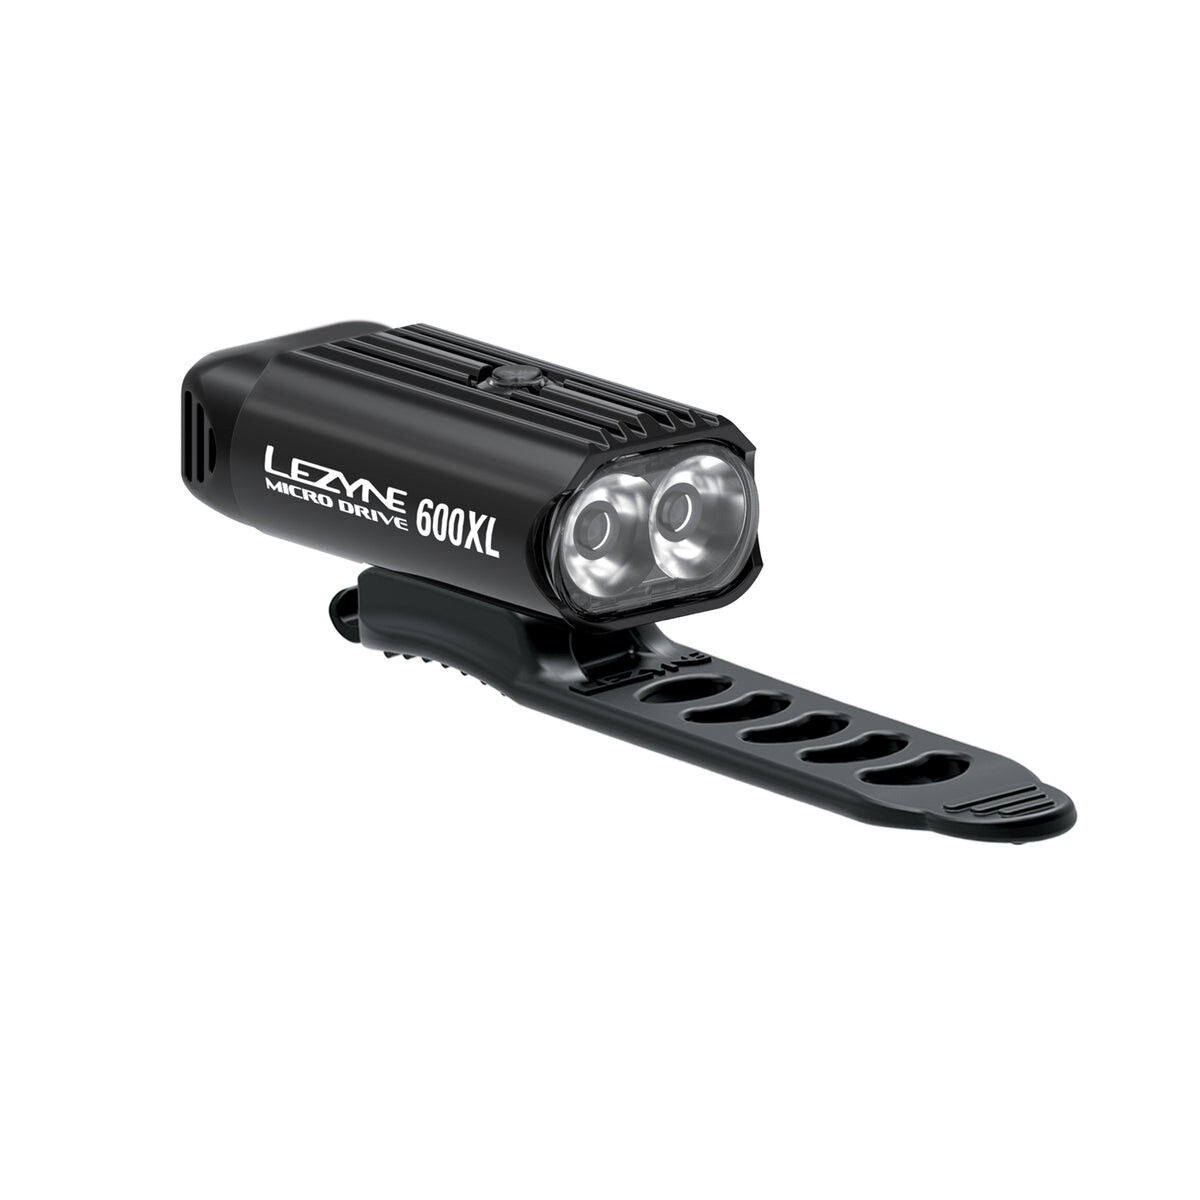 Lezyne Micro Drive 600XL - Fietsverlichtingsset | Hardloop